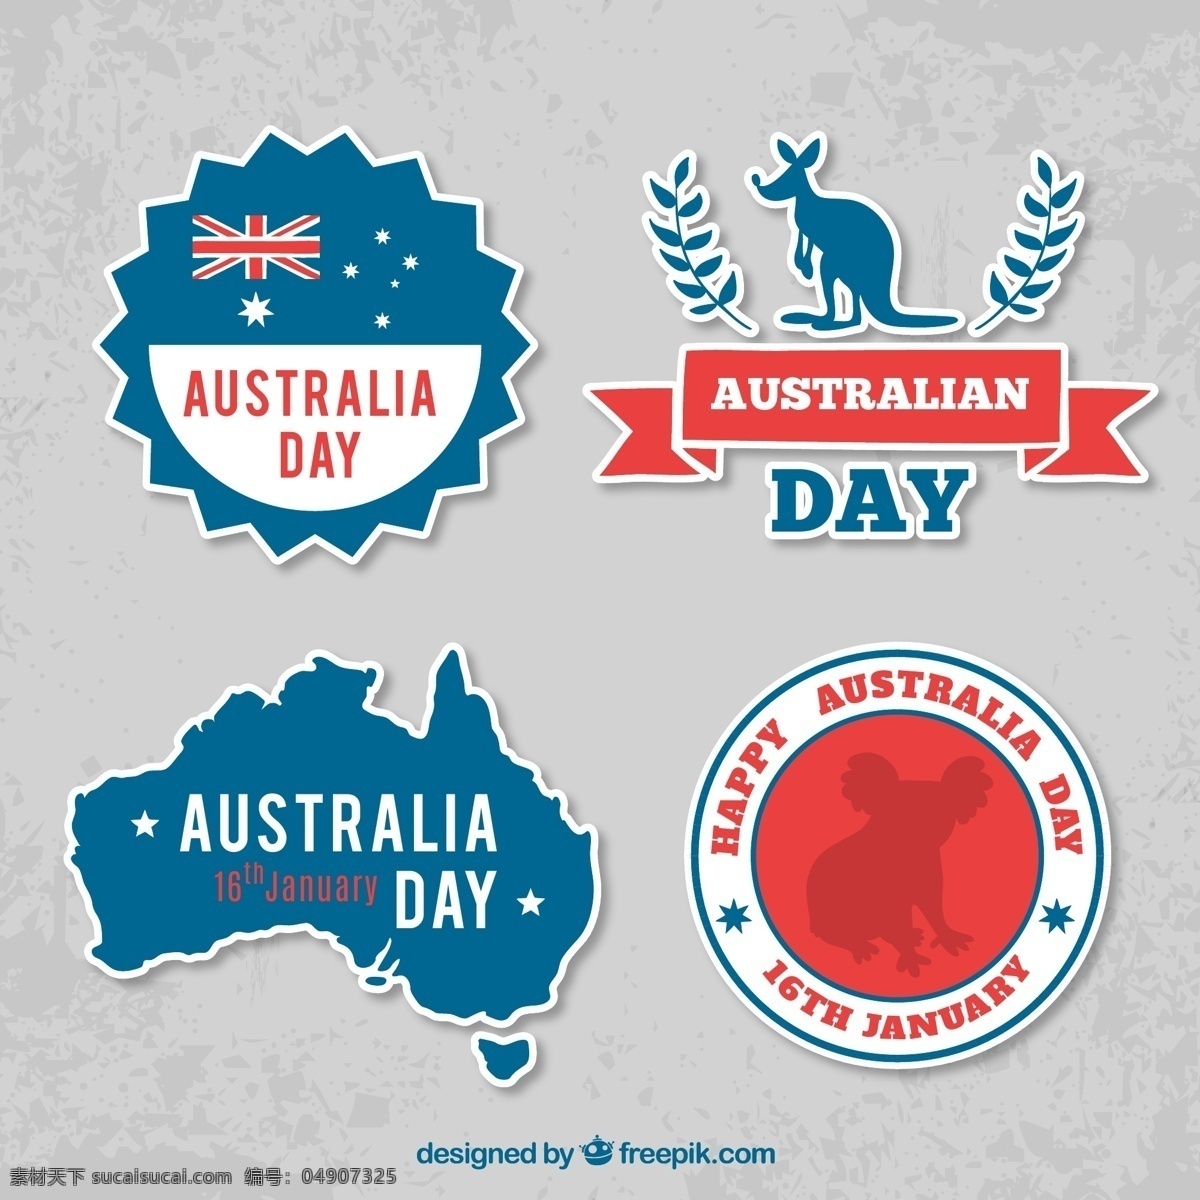 创意 澳大利亚 日 标签 澳大利亚日 袋鼠 澳大利亚国旗 考拉熊 标志 招贴设计